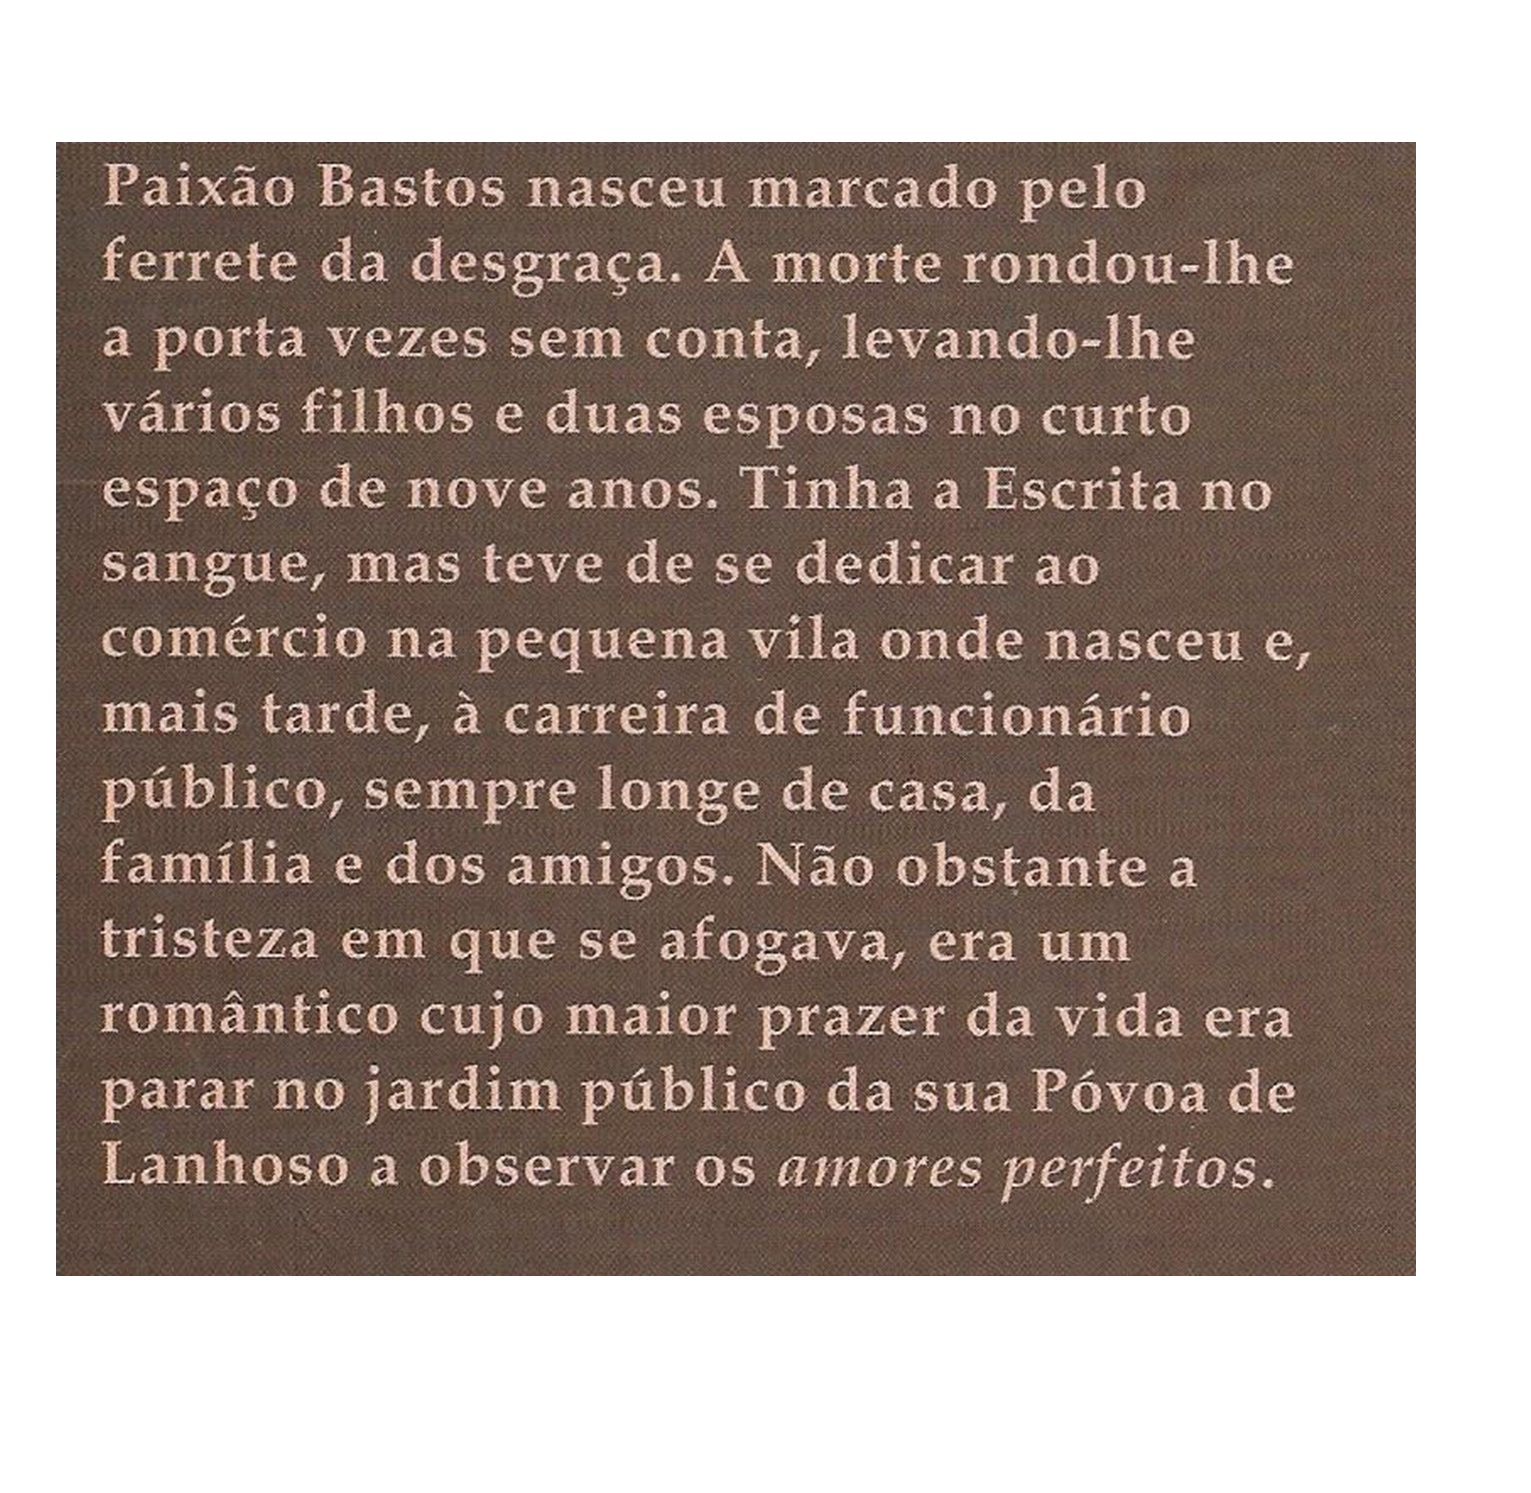 PAIXÃO BASTOS (1870-1947)